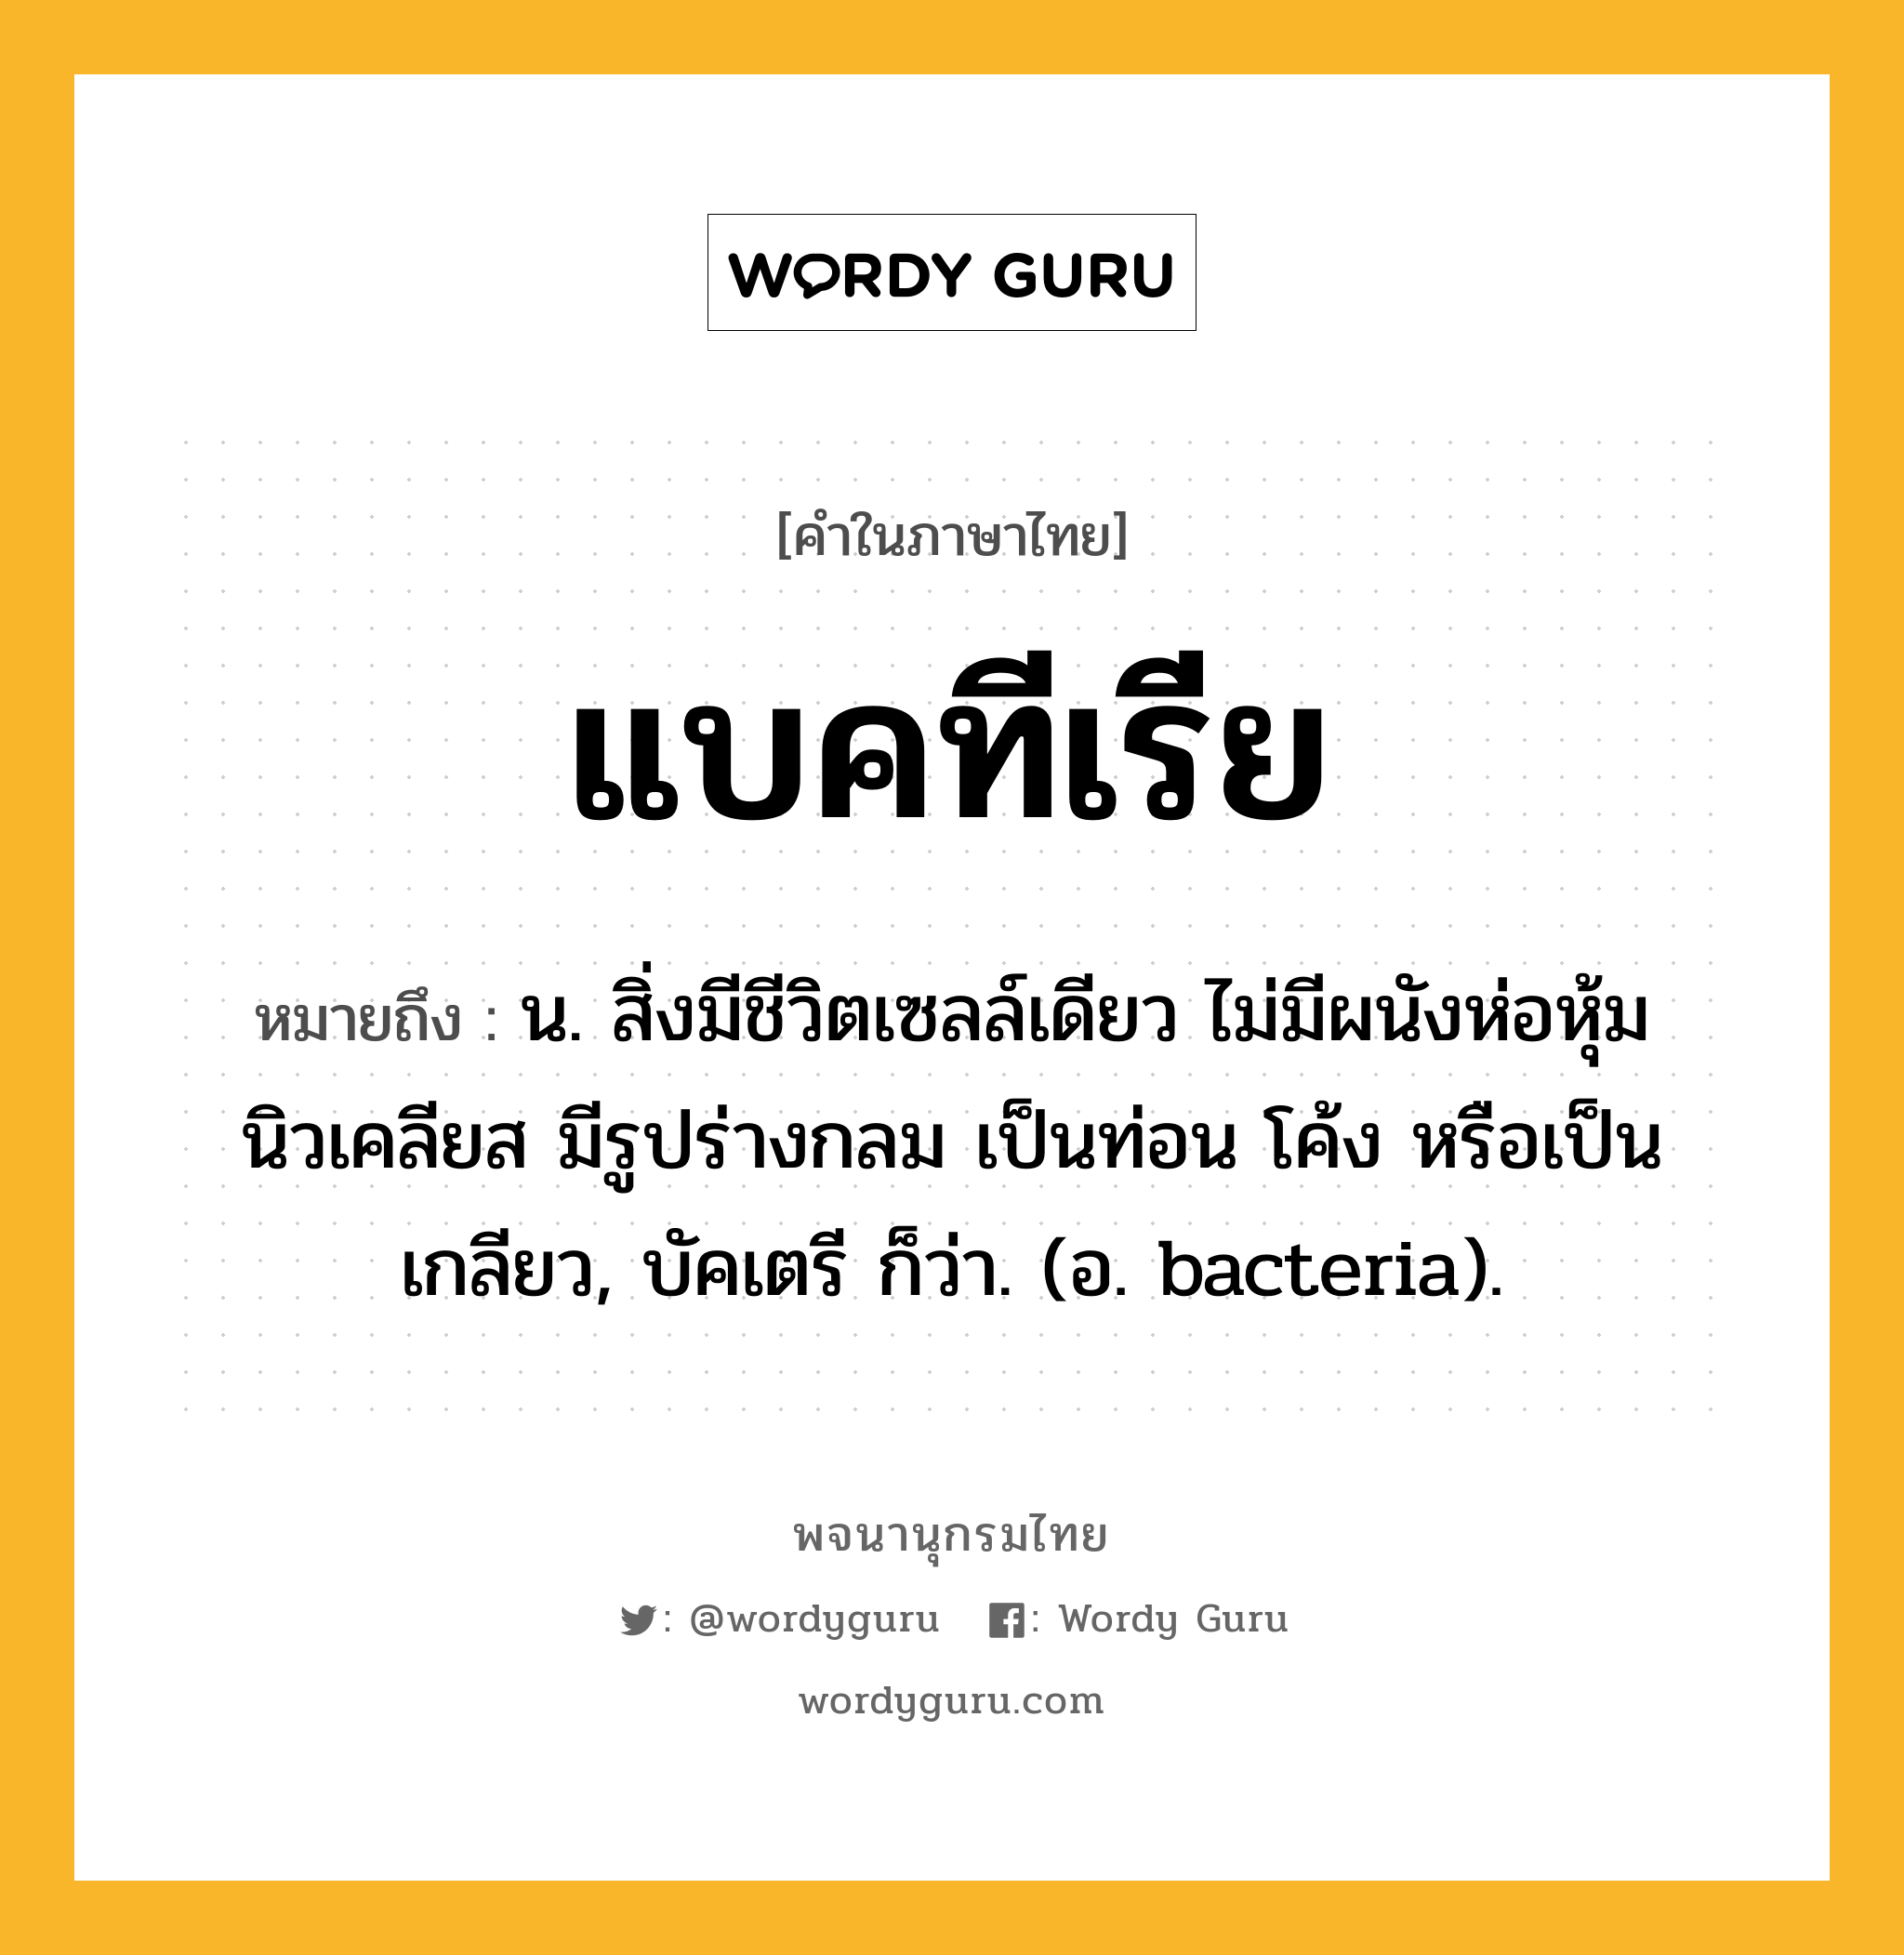 แบคทีเรีย หมายถึงอะไร?, คำในภาษาไทย แบคทีเรีย หมายถึง น. สิ่งมีชีวิตเซลล์เดียว ไม่มีผนังห่อหุ้มนิวเคลียส มีรูปร่างกลม เป็นท่อน โค้ง หรือเป็นเกลียว, บัคเตรี ก็ว่า. (อ. bacteria).